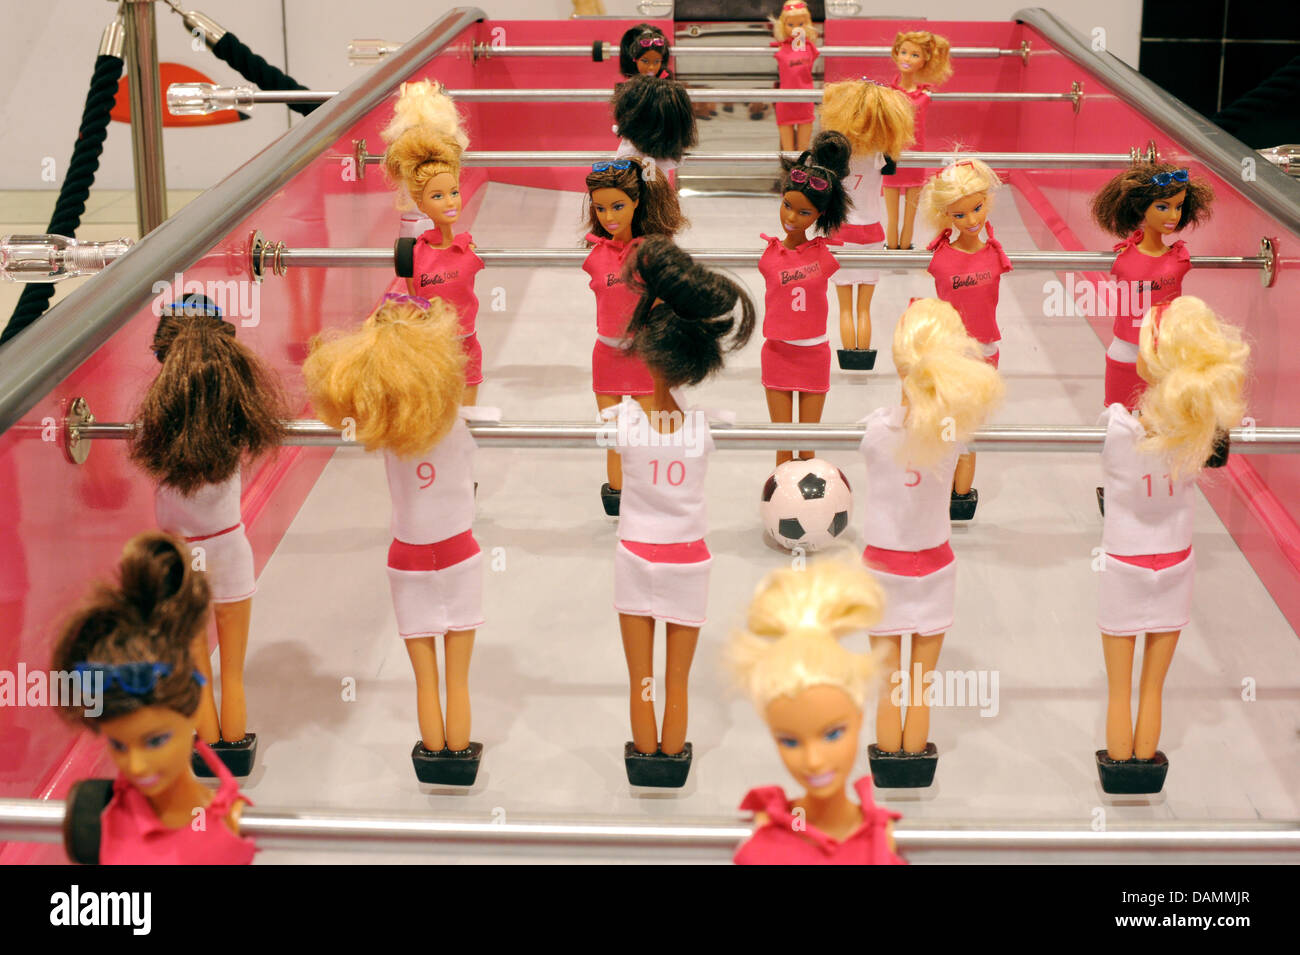 Il 20.000 euro Edizione speciale di una bambola Barbie calcetto sorge  presso il centro commerciale KaDeWe di Berlino, Germania, 23 giugno 2011.  In occasione della prossima FIFA Coppa del Mondo femminile, un